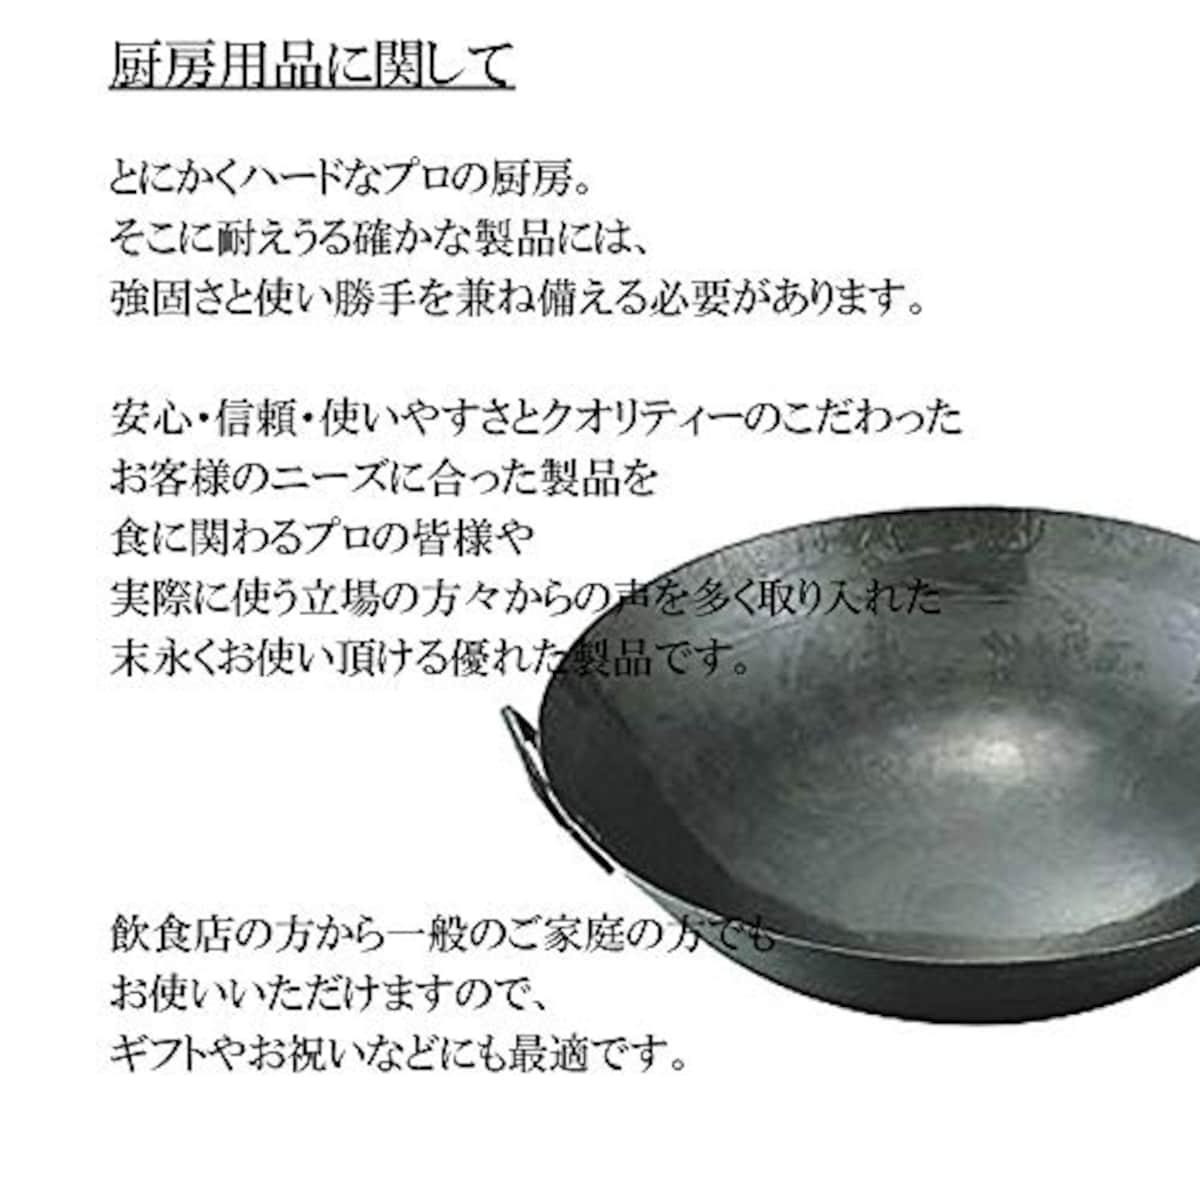  マイスタープレミアムフライパン 22cm [ 22cm 530g ] [ フライパン ] | 厨房 キッチン 台所 調理 業務用画像2 